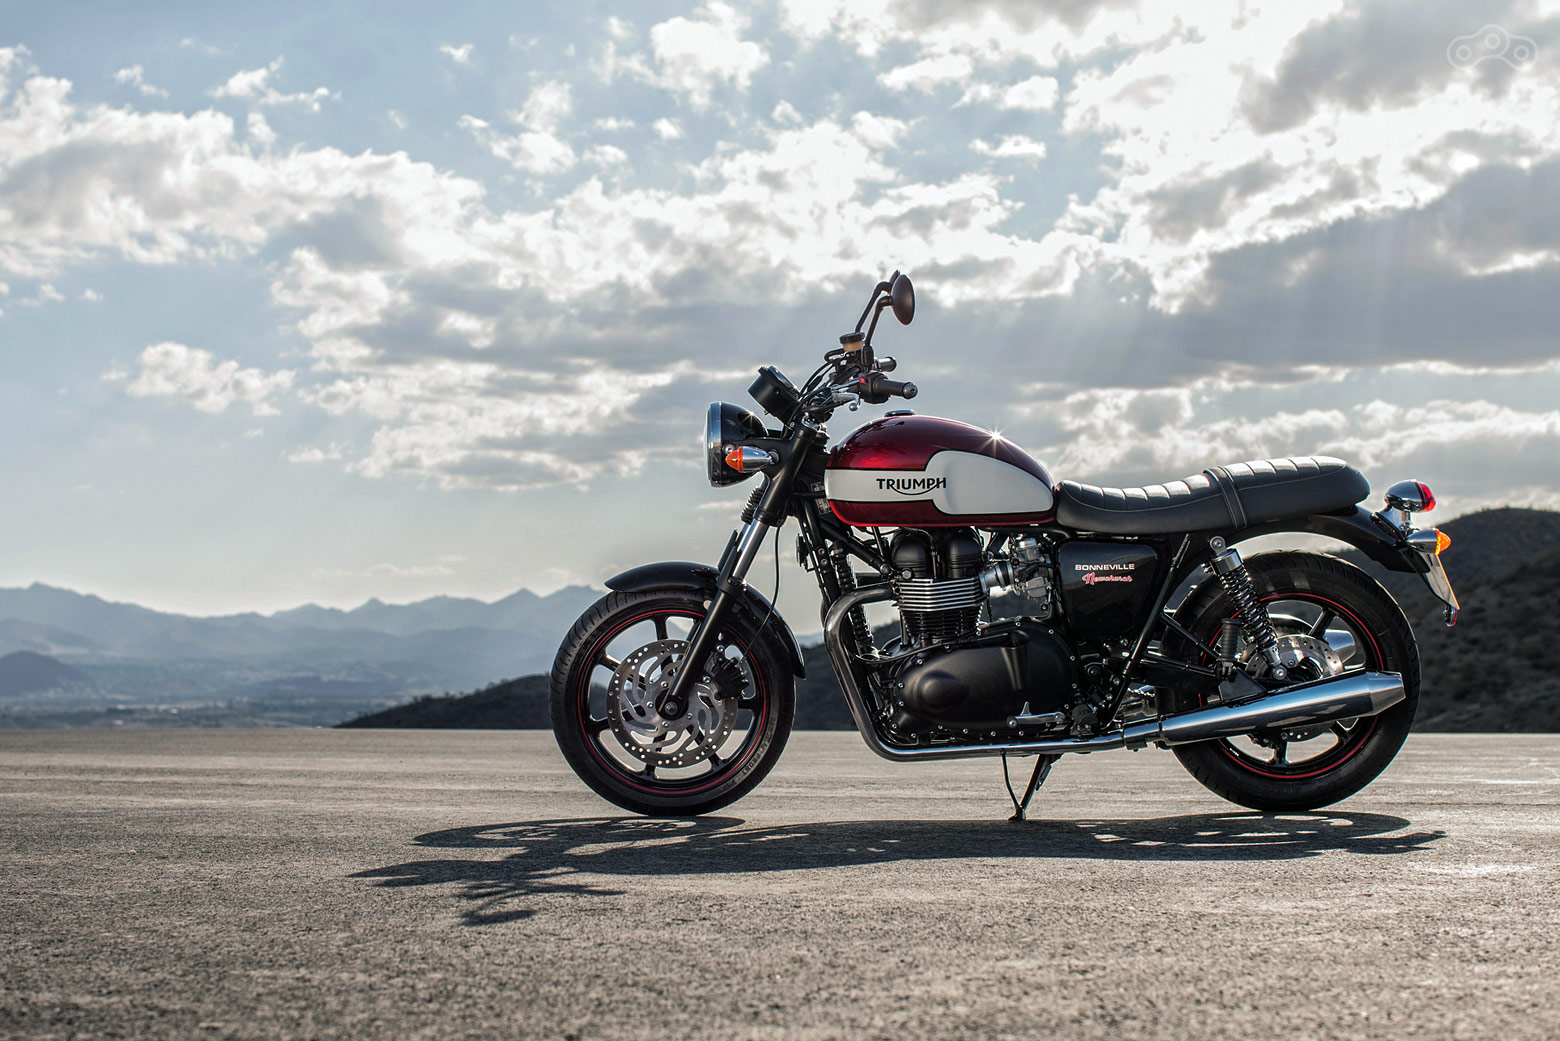 Ретро снова в моде. Мотоцикл триумф боневилль модельного 2015 года. 